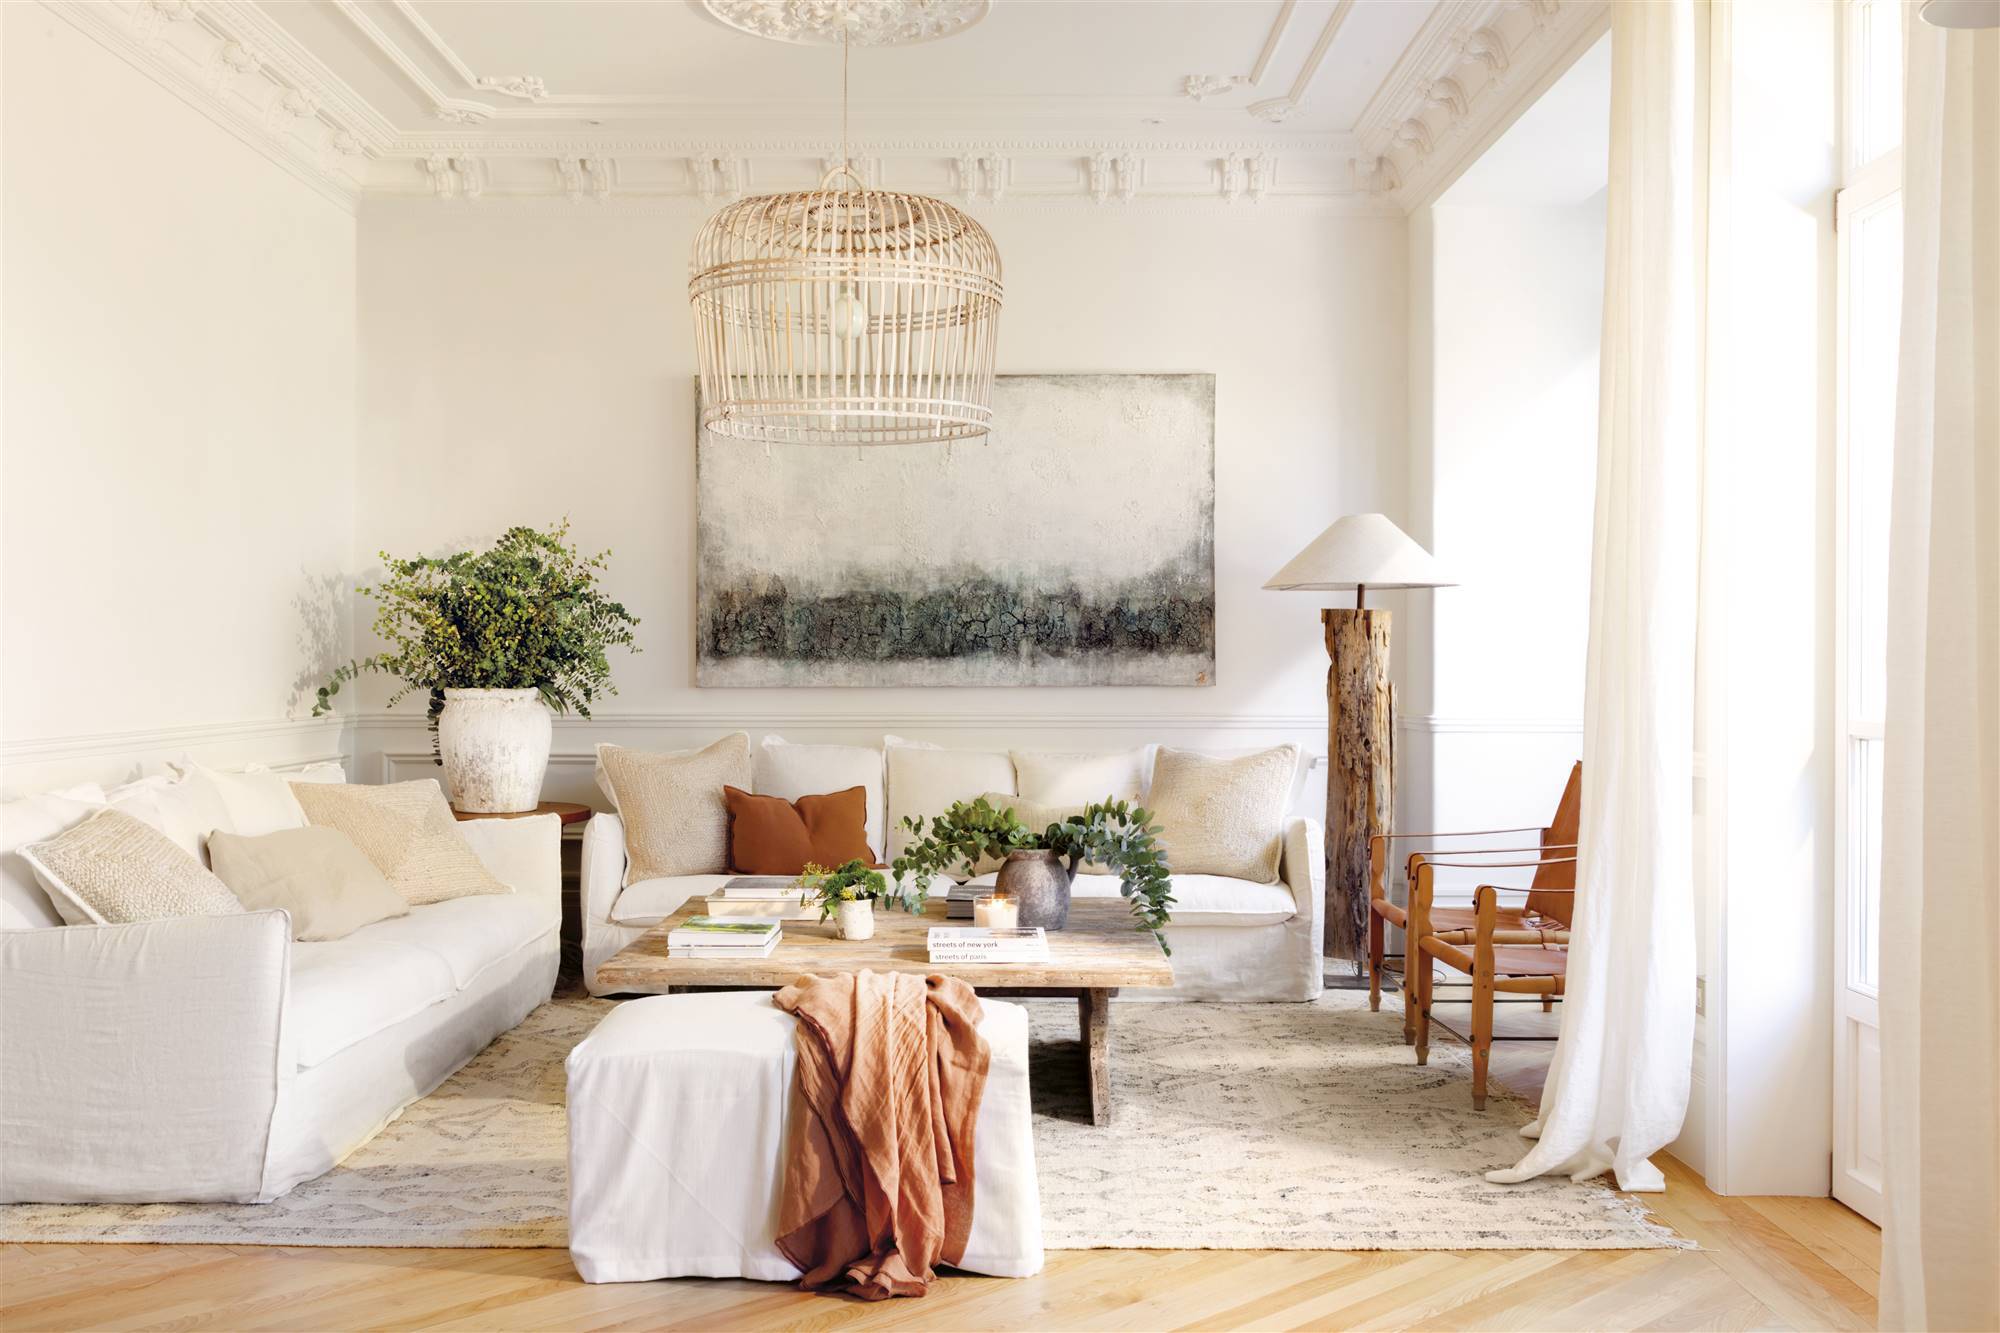 Salón blanco de arquitectura señorial con gran ventanal y un cuadro sobre sofá